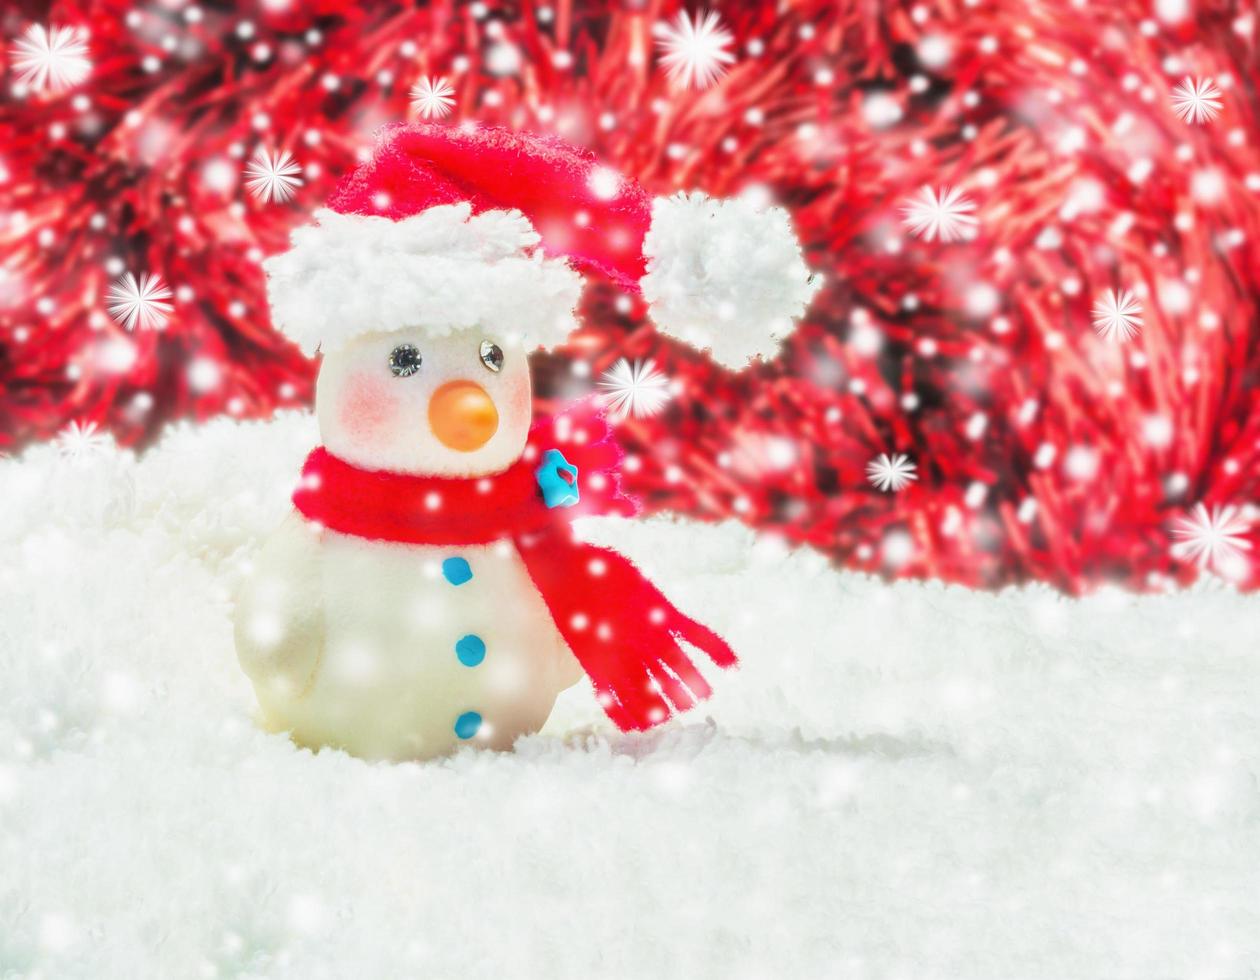 homem de neve sobre fundo vermelho e branco desfocado para decoração de ano novo de natal foto